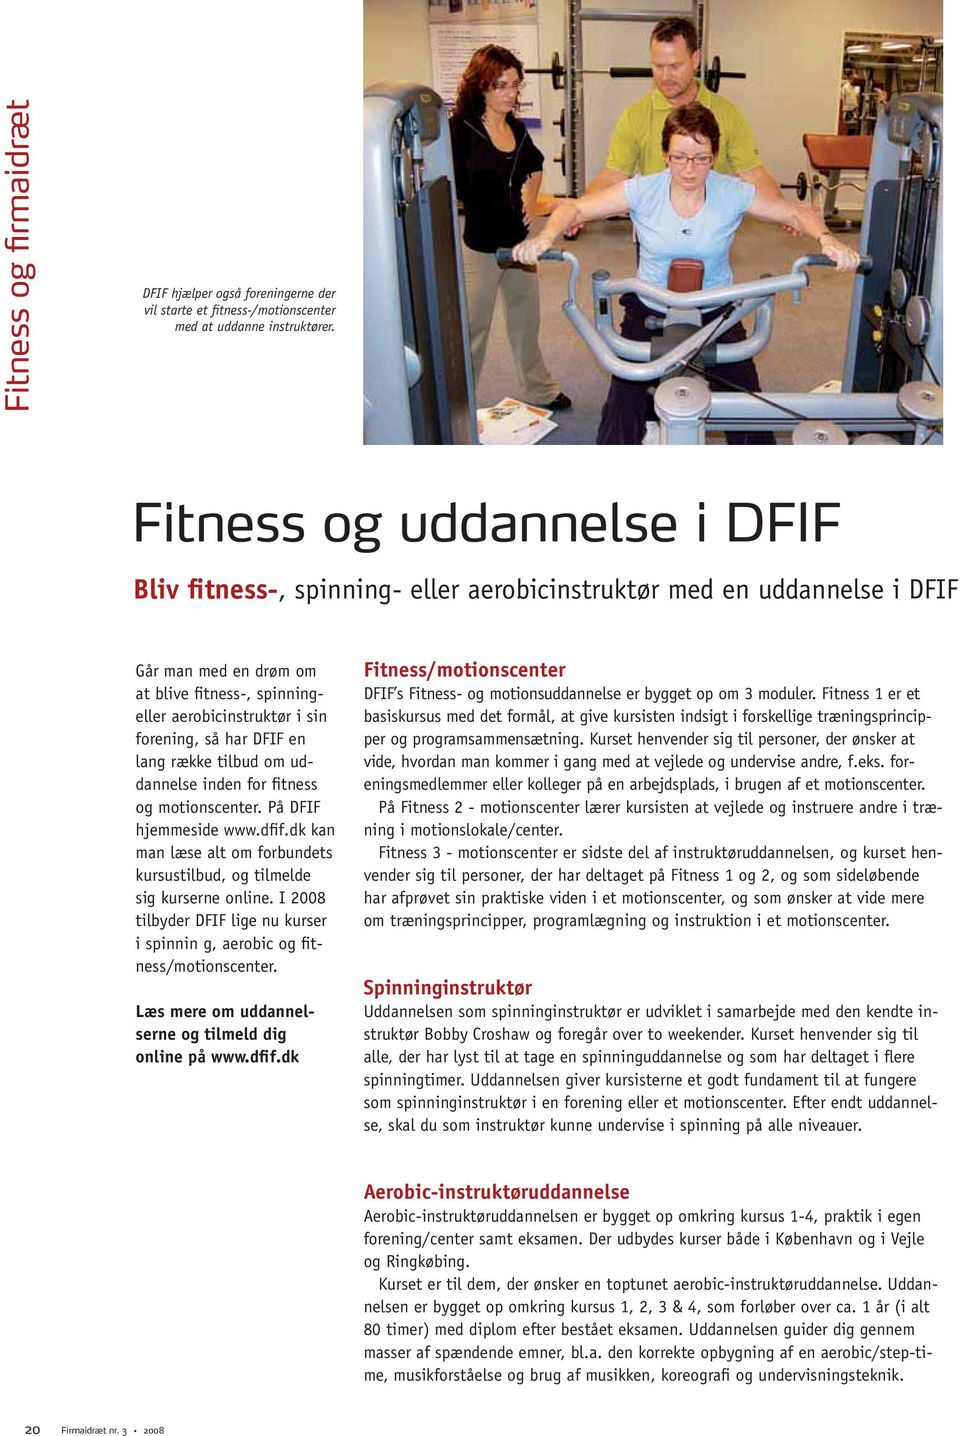 DFIF en lang række tilbud om uddannelse inden for fitness og motionscenter. På DFIF hjemmeside www.dfif.dk kan man læse alt om forbundets kursustilbud, og tilmelde sig kurserne online.